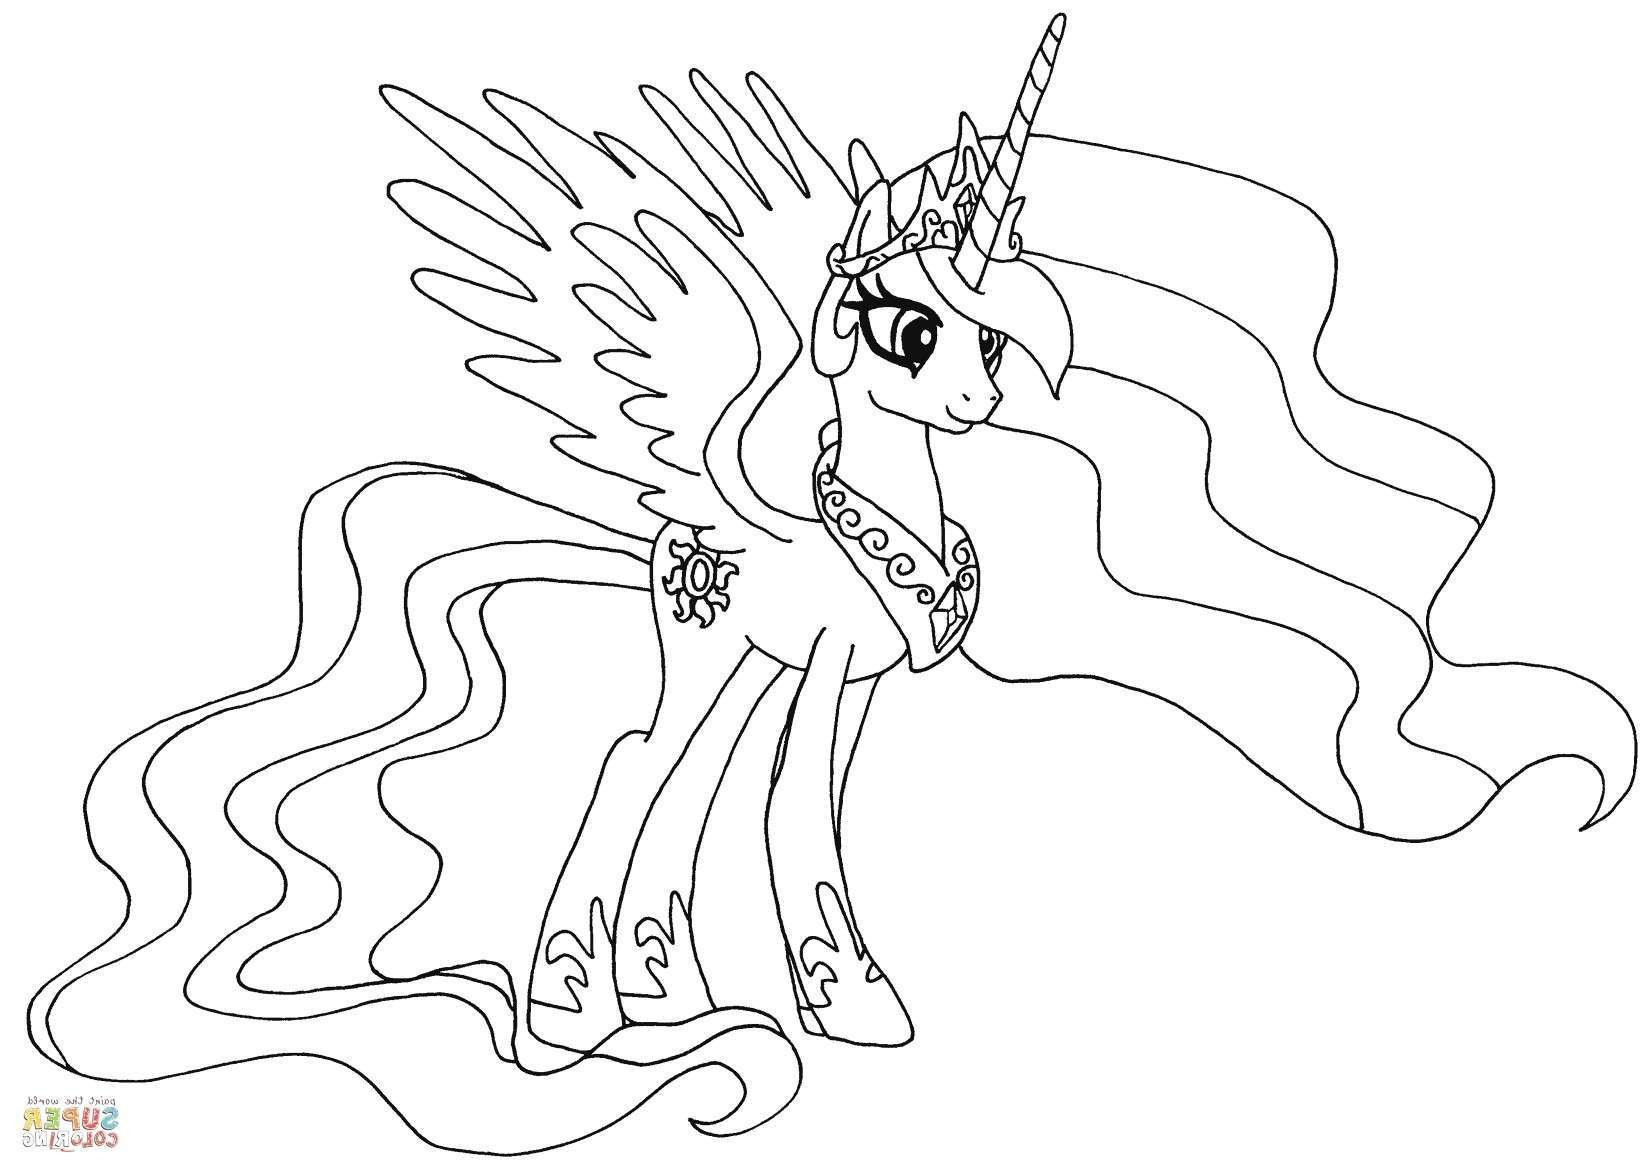 Ausmalbilder My Little Pony Prinzessin Celestia
 Soy Luna Malvorlagen Inspirierend Ausmalbilder Kostenlos